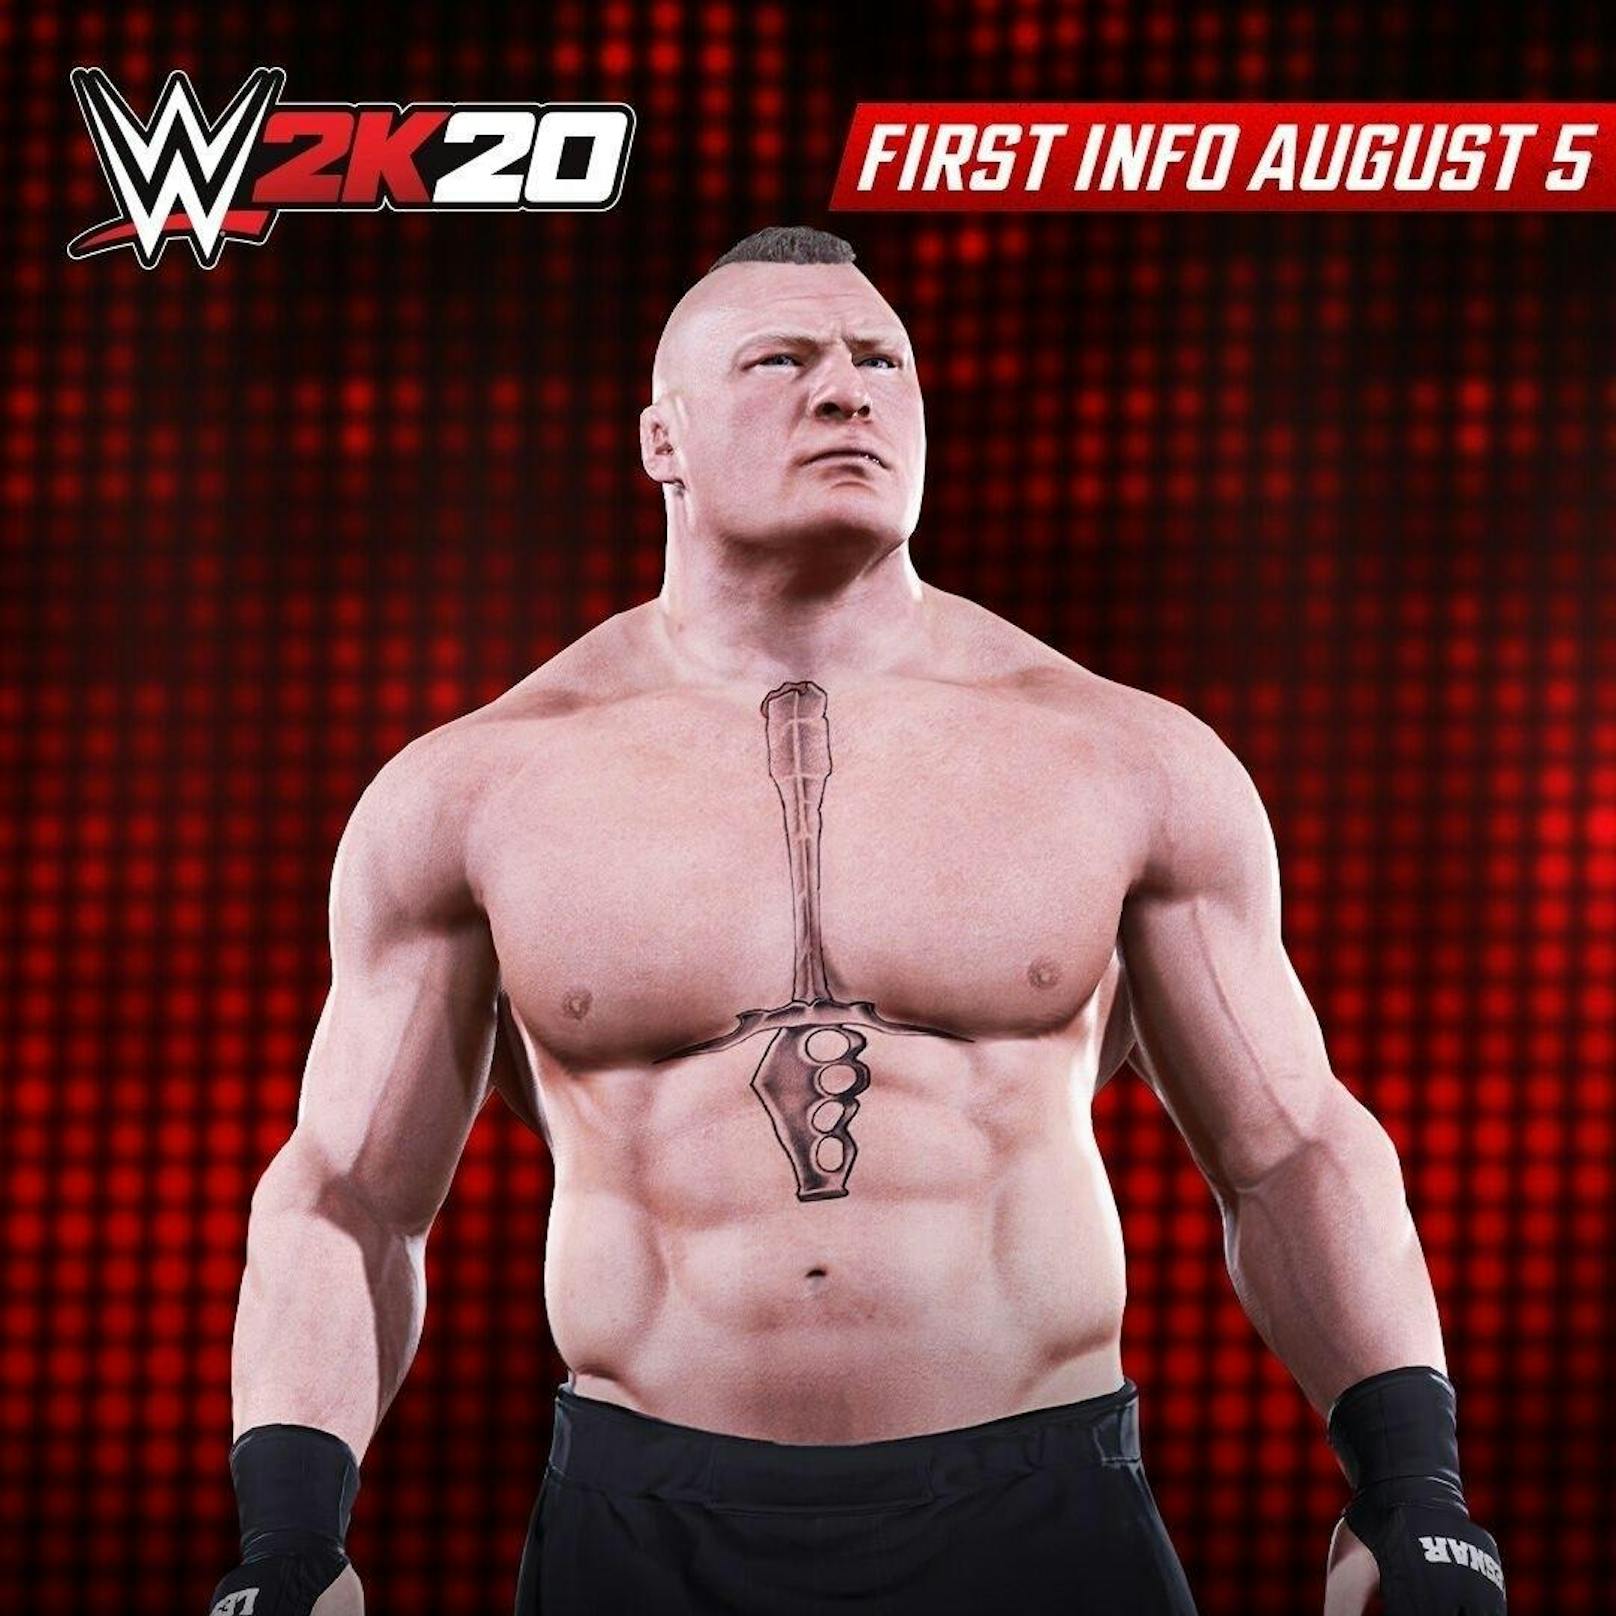 <b>01. August 2019: </b>2K hat den ersten Screenshot aus WWE 2K20 veröffentlicht. Gleichzeitig kündigt das Studio weitere Informationen zum Wrestling-Game für den 5. August an. WWE 2K20 wird der 21. Eintrag in der WWE-Videospielserie sein und das siebente Spiel unter dem Banner von 2K. Bisher ist wenig zum Game bekannt. Es wird voraussichtlich auf PlayStation 4, Xbox One und Windows PC erscheinen. Ein Veröffentlichungstermin wurde noch nicht genannt. Bleibt man der Tradition der Vorgänger allerdings treu, wird WWE 2K20 im Laufe des Oktobers 2019 erscheinen.